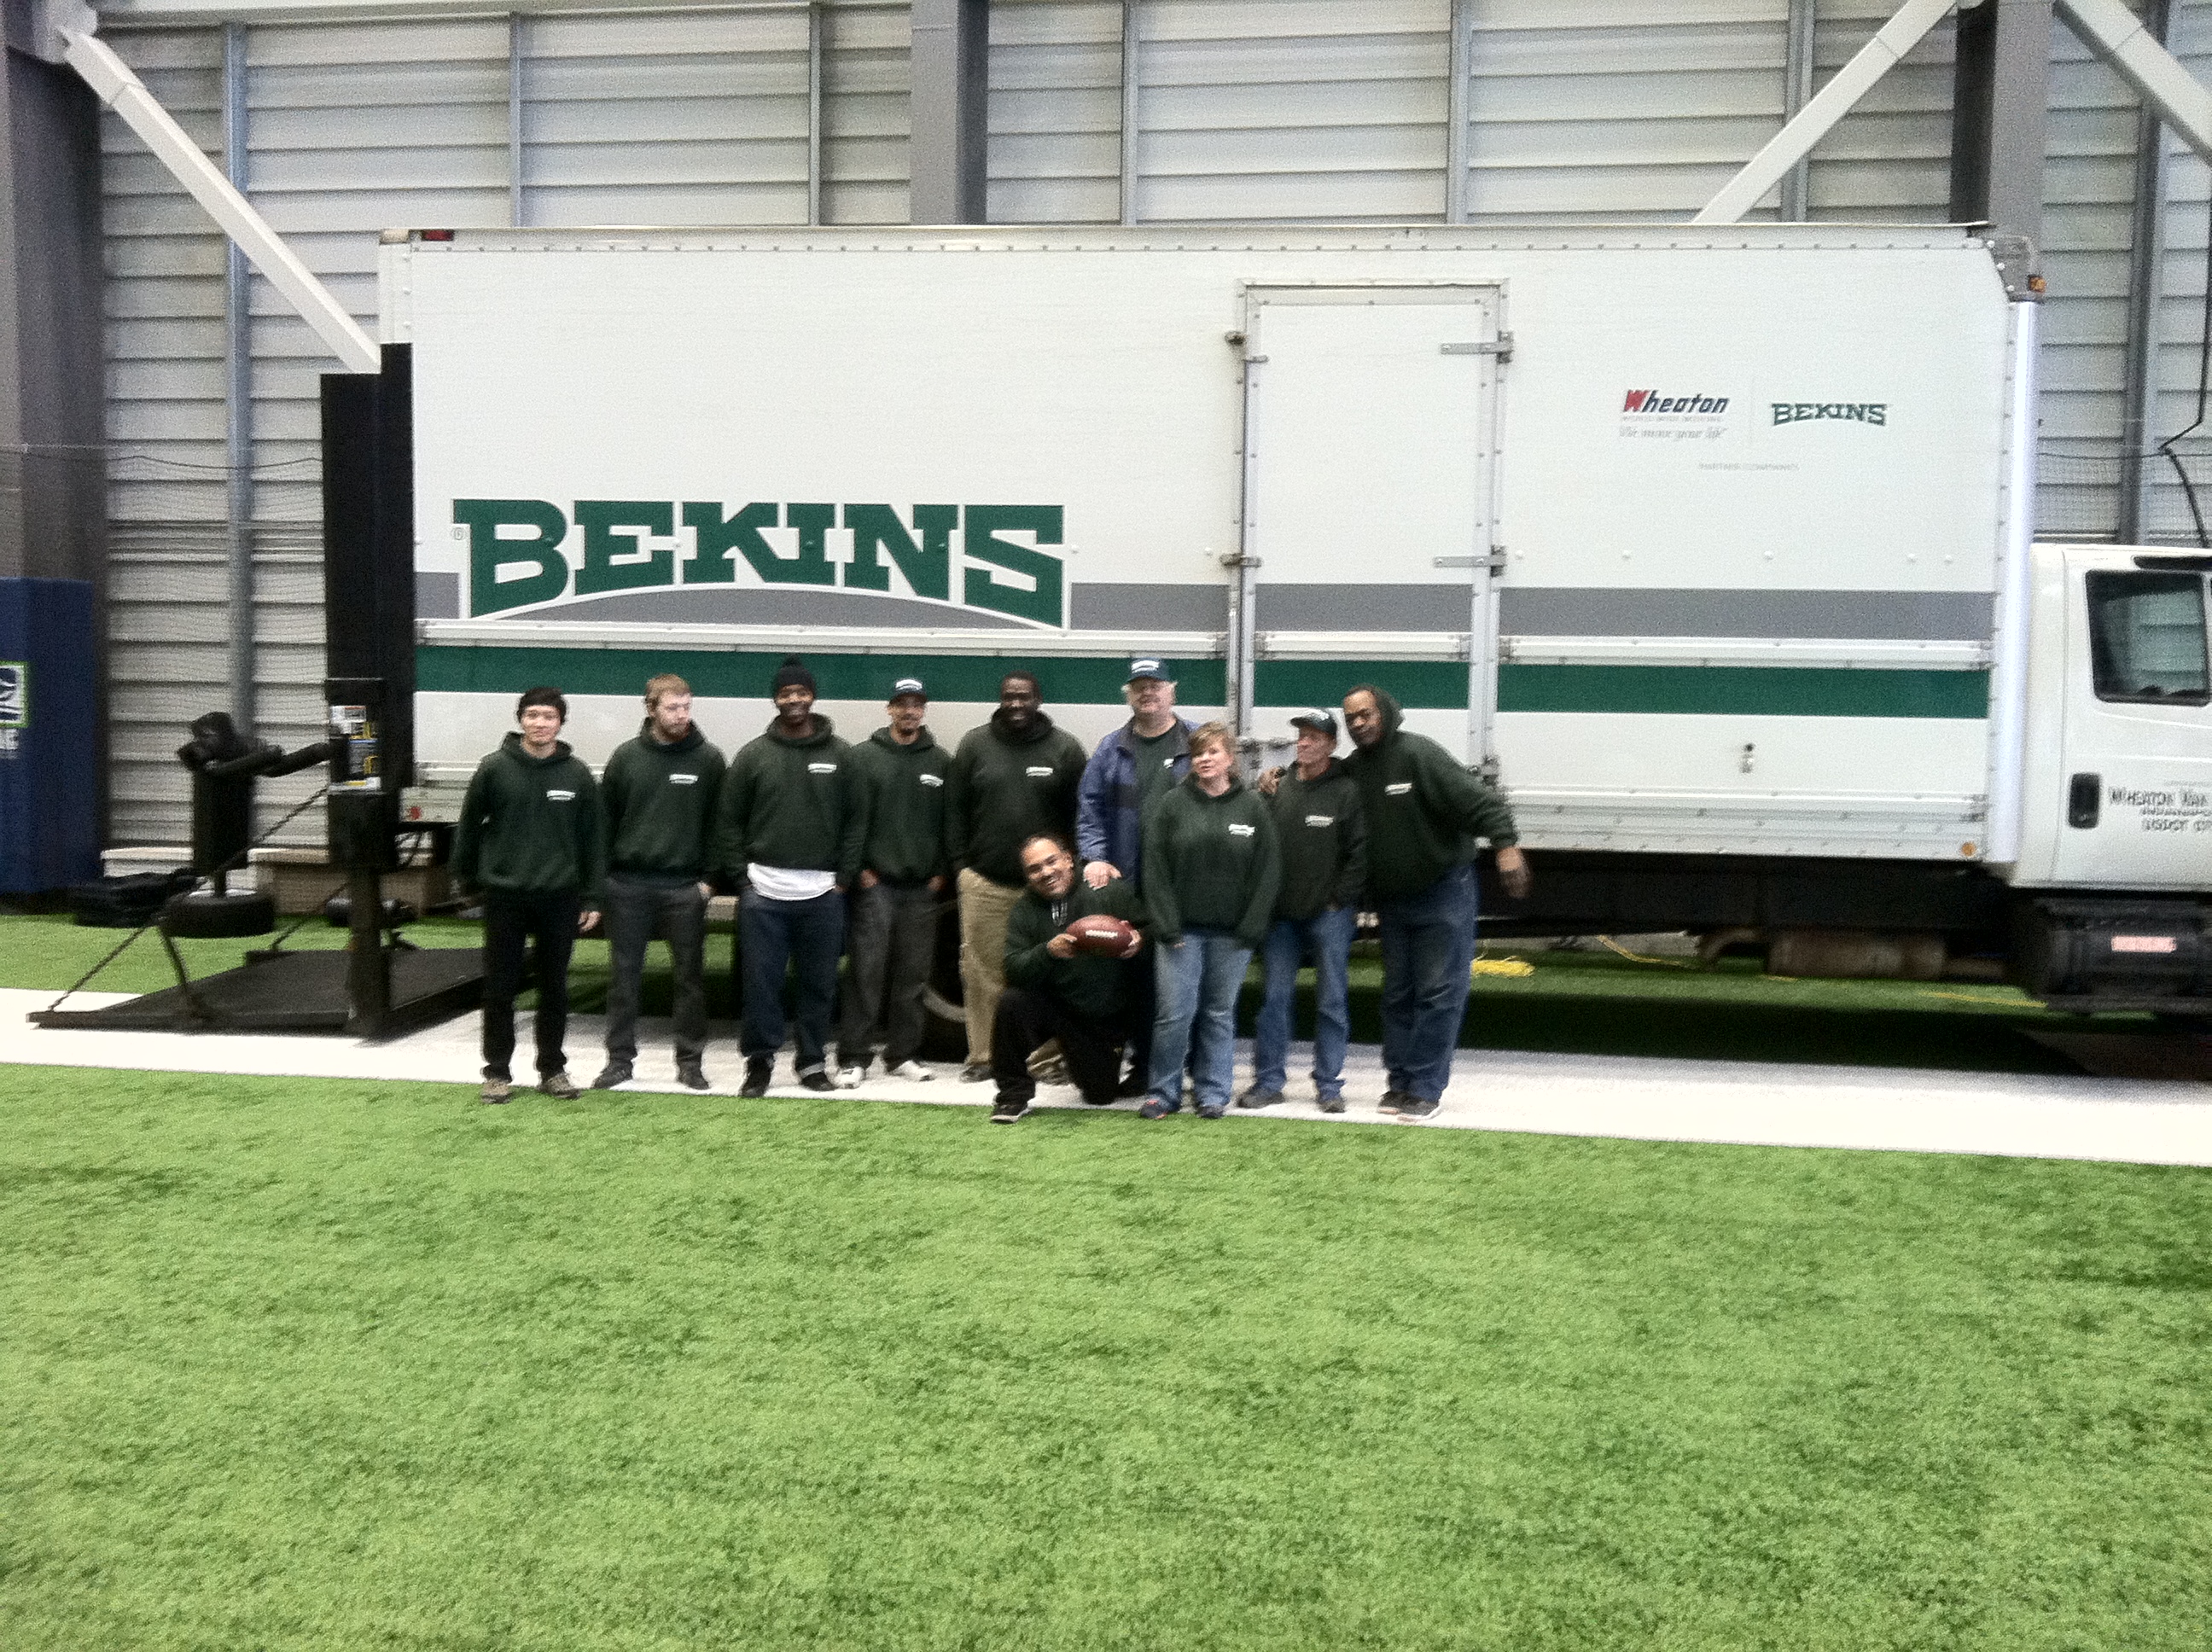 VMAC Bekins Truck Indoors